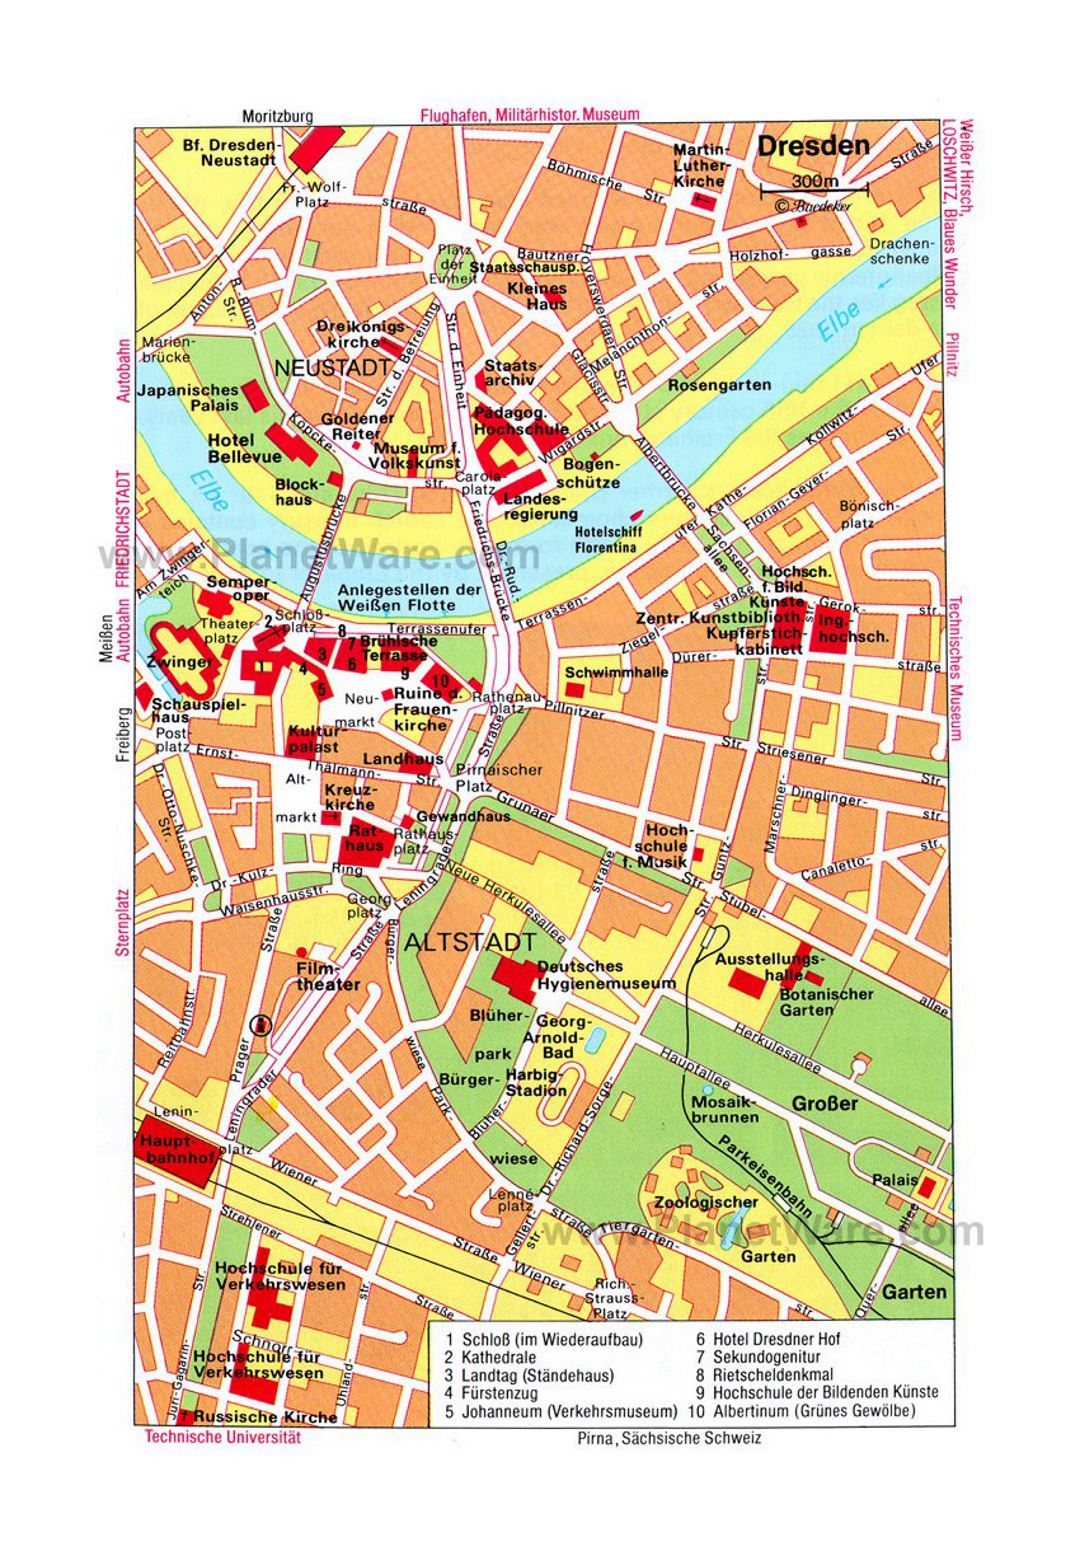 Детальная туристическая карта центральной части города Дрезден